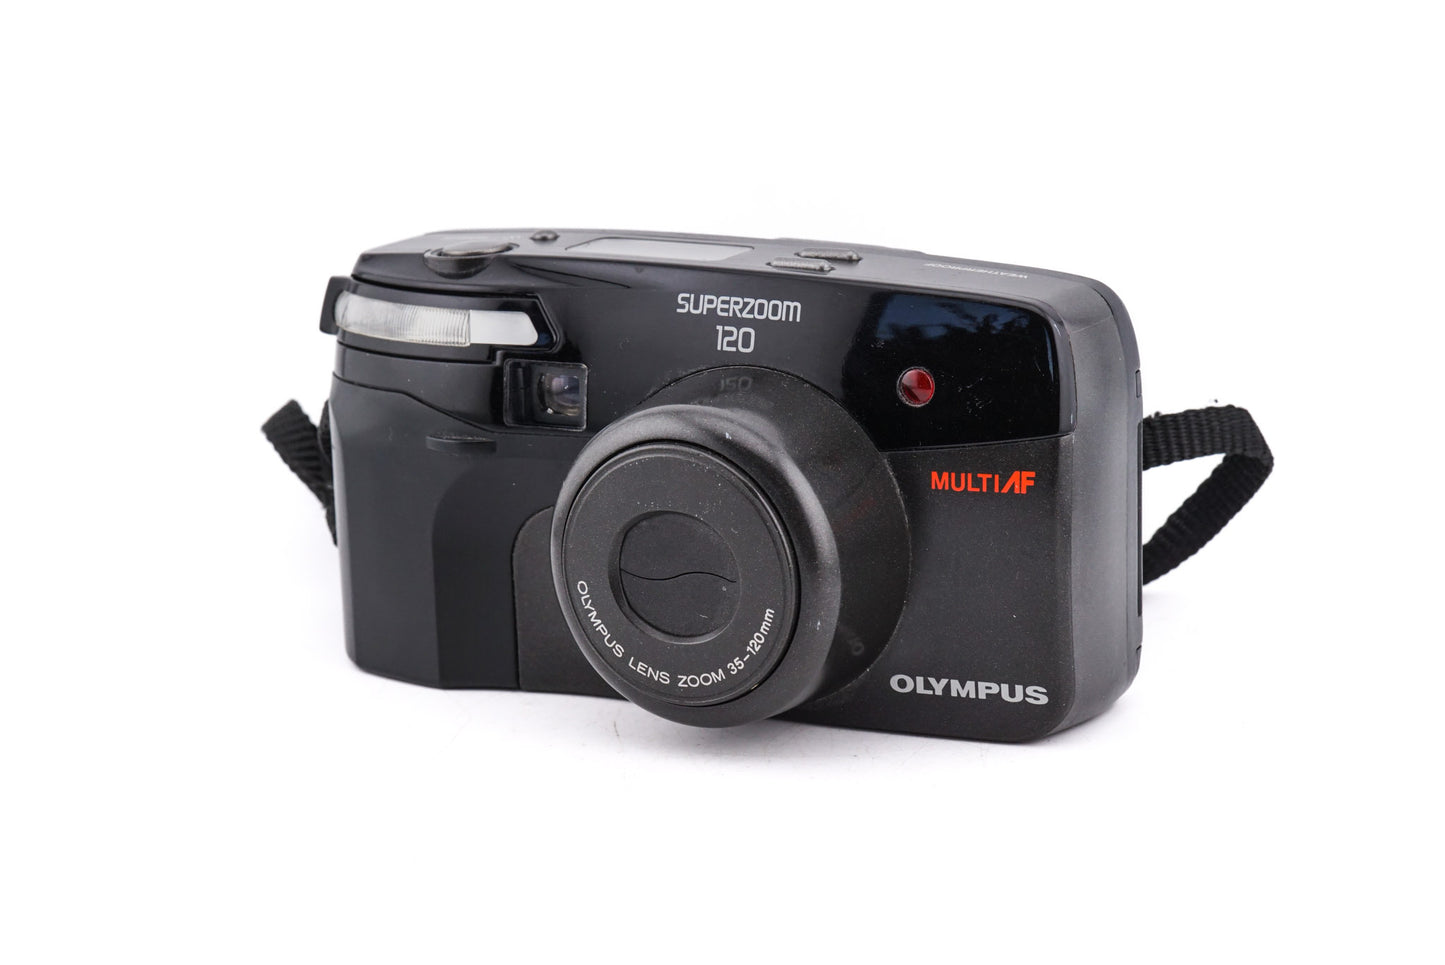 Olympus Superzoom 120 - Camera